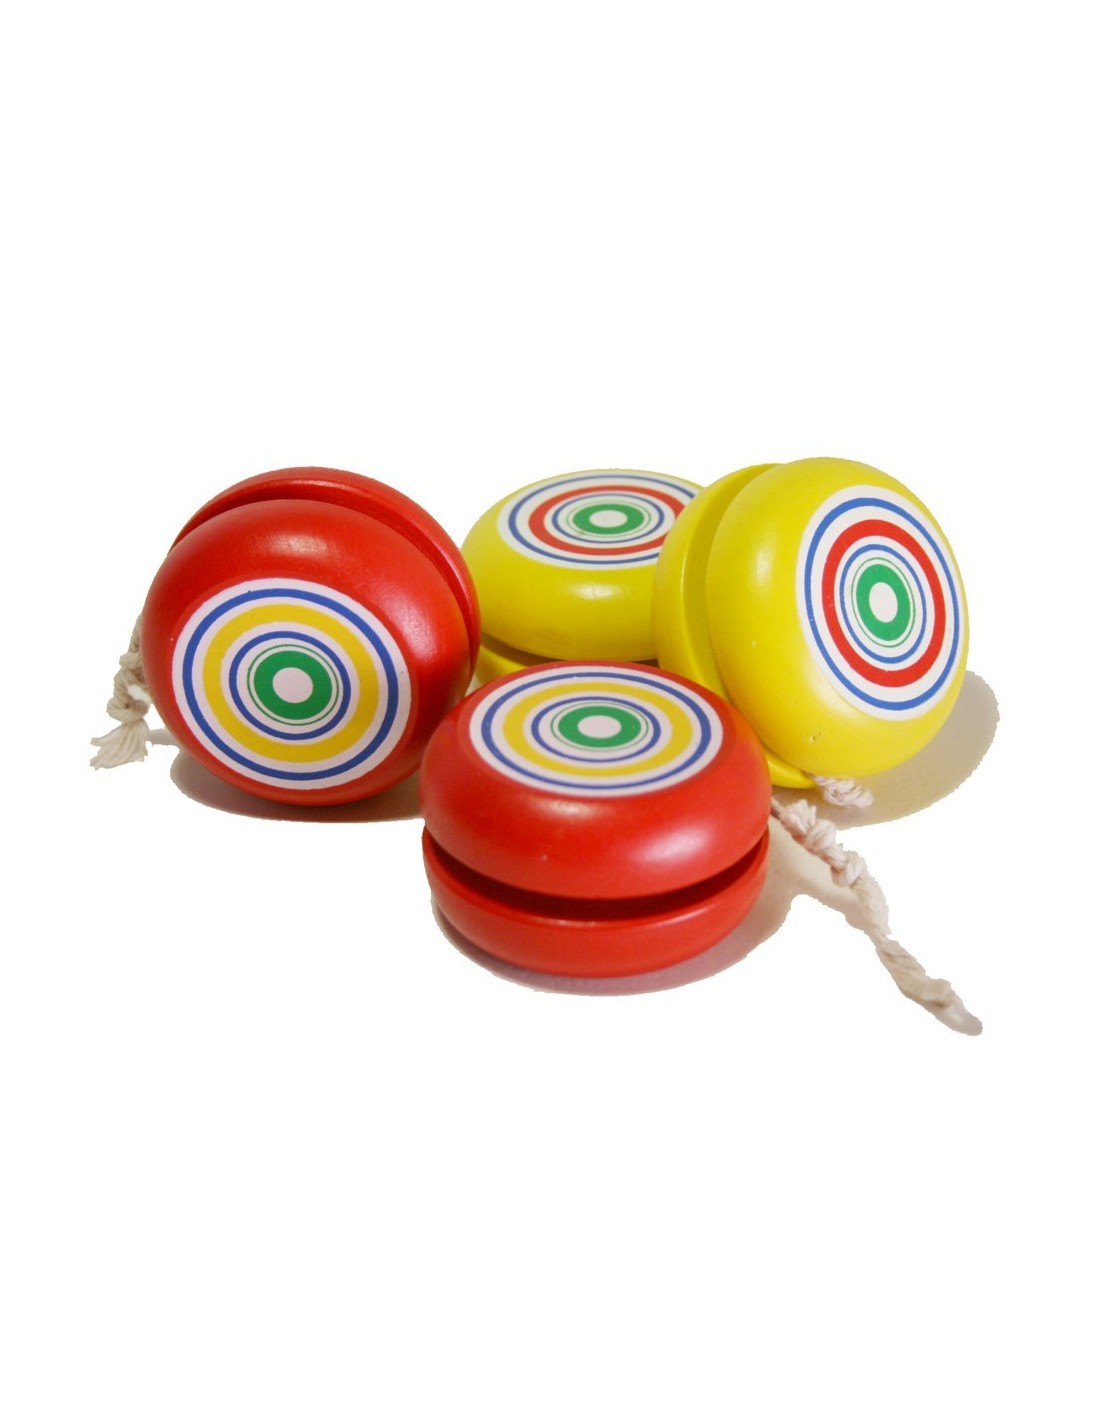 Yoyo de madera de colores rojo y amarillo juguete creativo yo-yo juego clásico y tradicional para niños